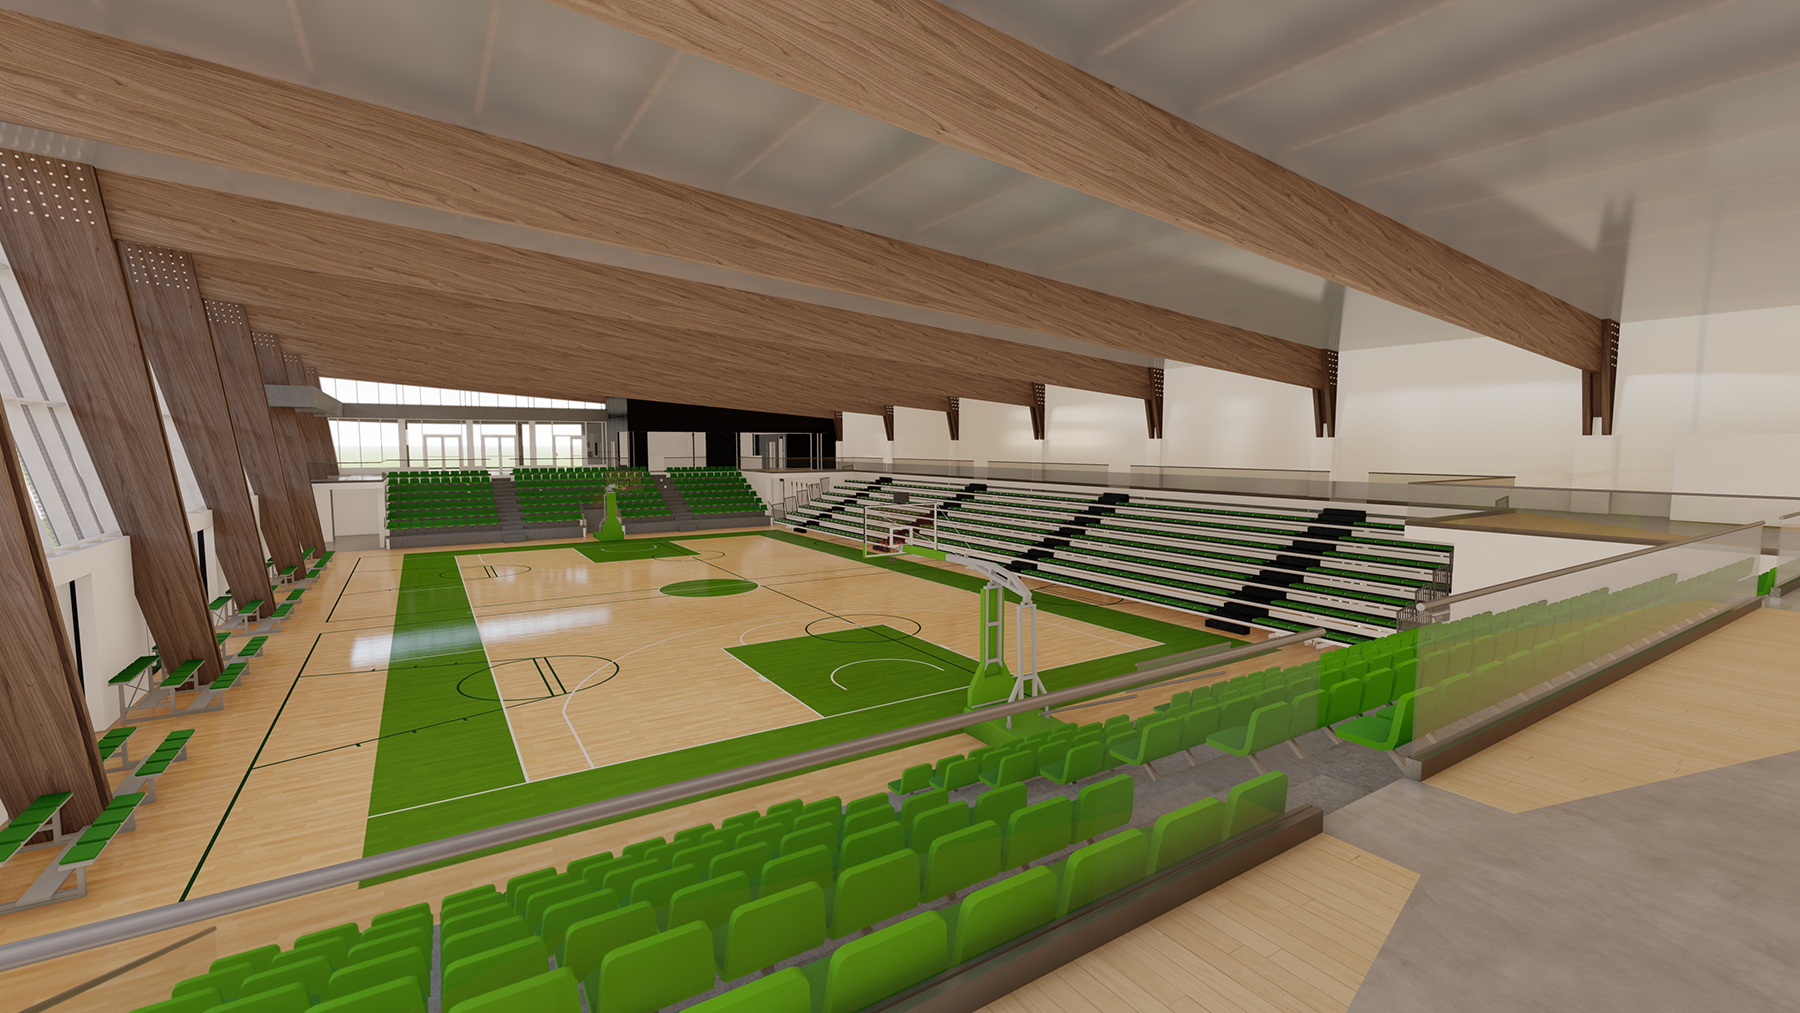 La construcción del polideportivo Urgozo comenzará durante el último trimestre de este año